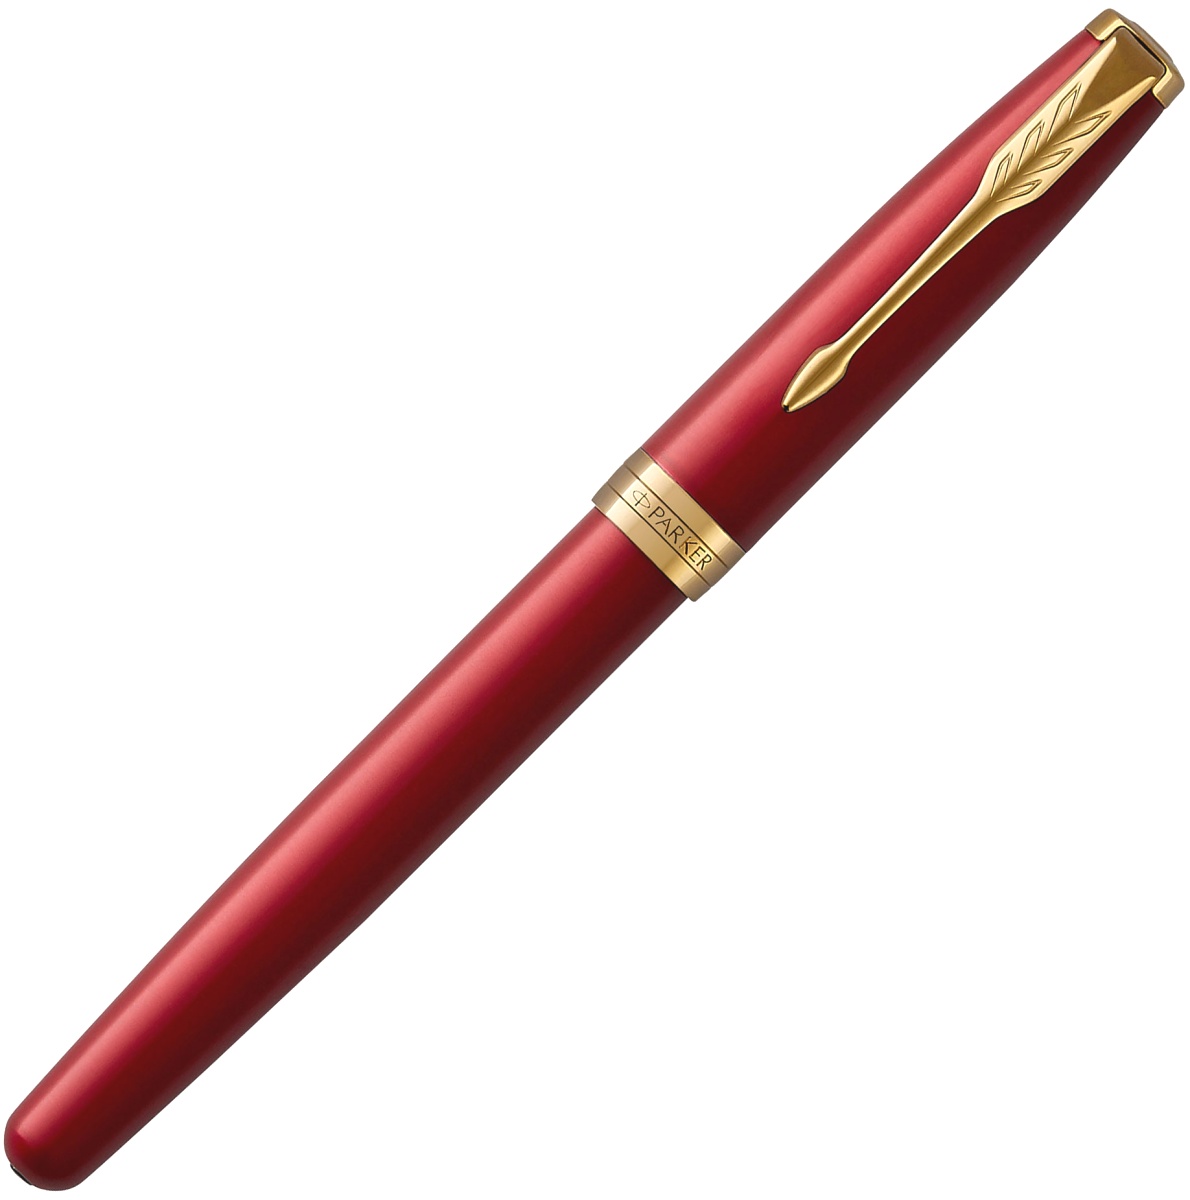  Ручка перьевая Parker Sonnet Core F539, Lacquer Red GT (Перо F), фото 2